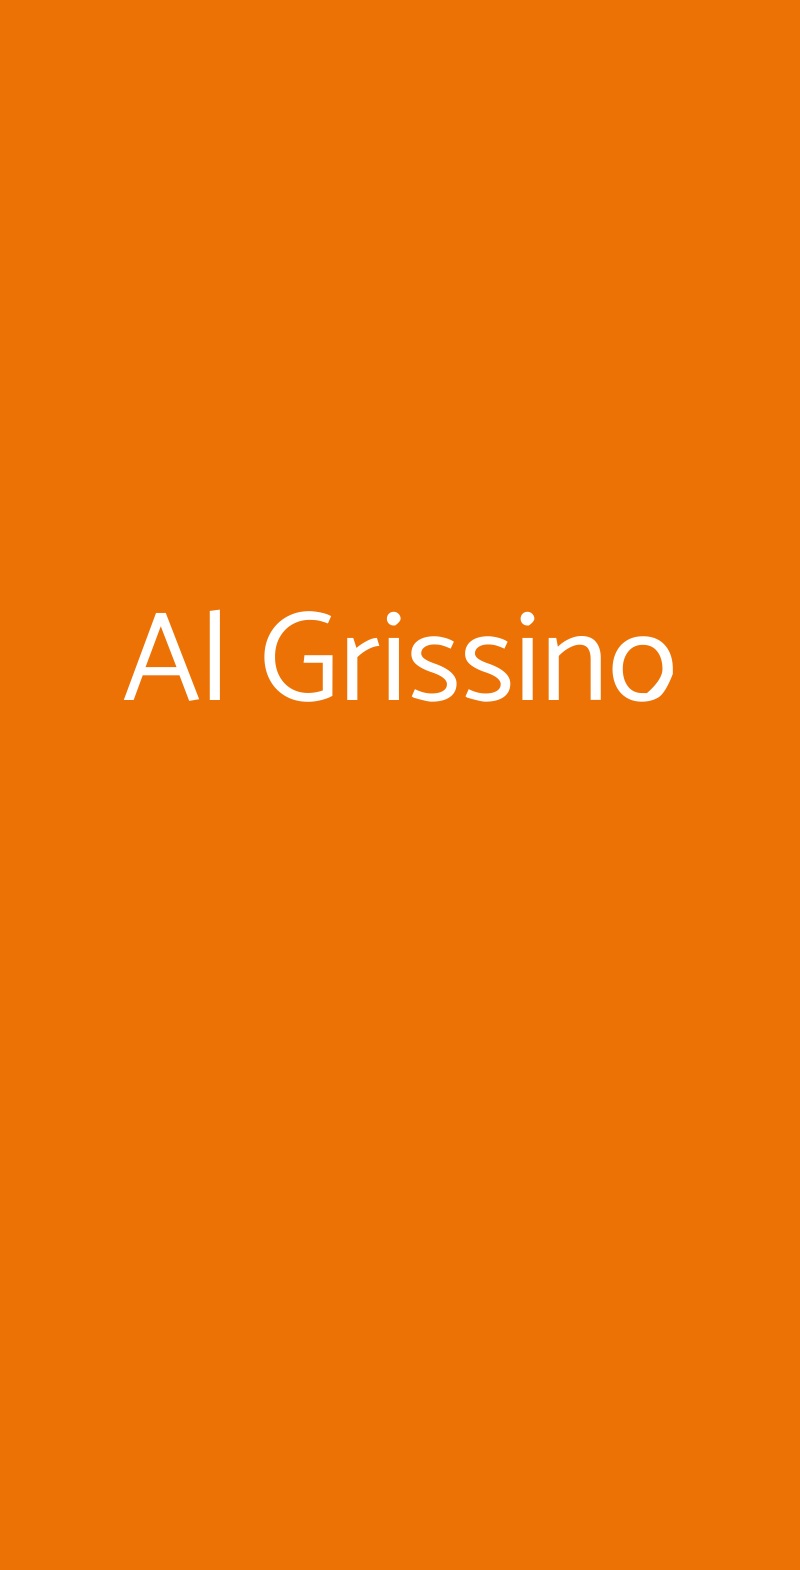 Al Grissino Milano menù 1 pagina